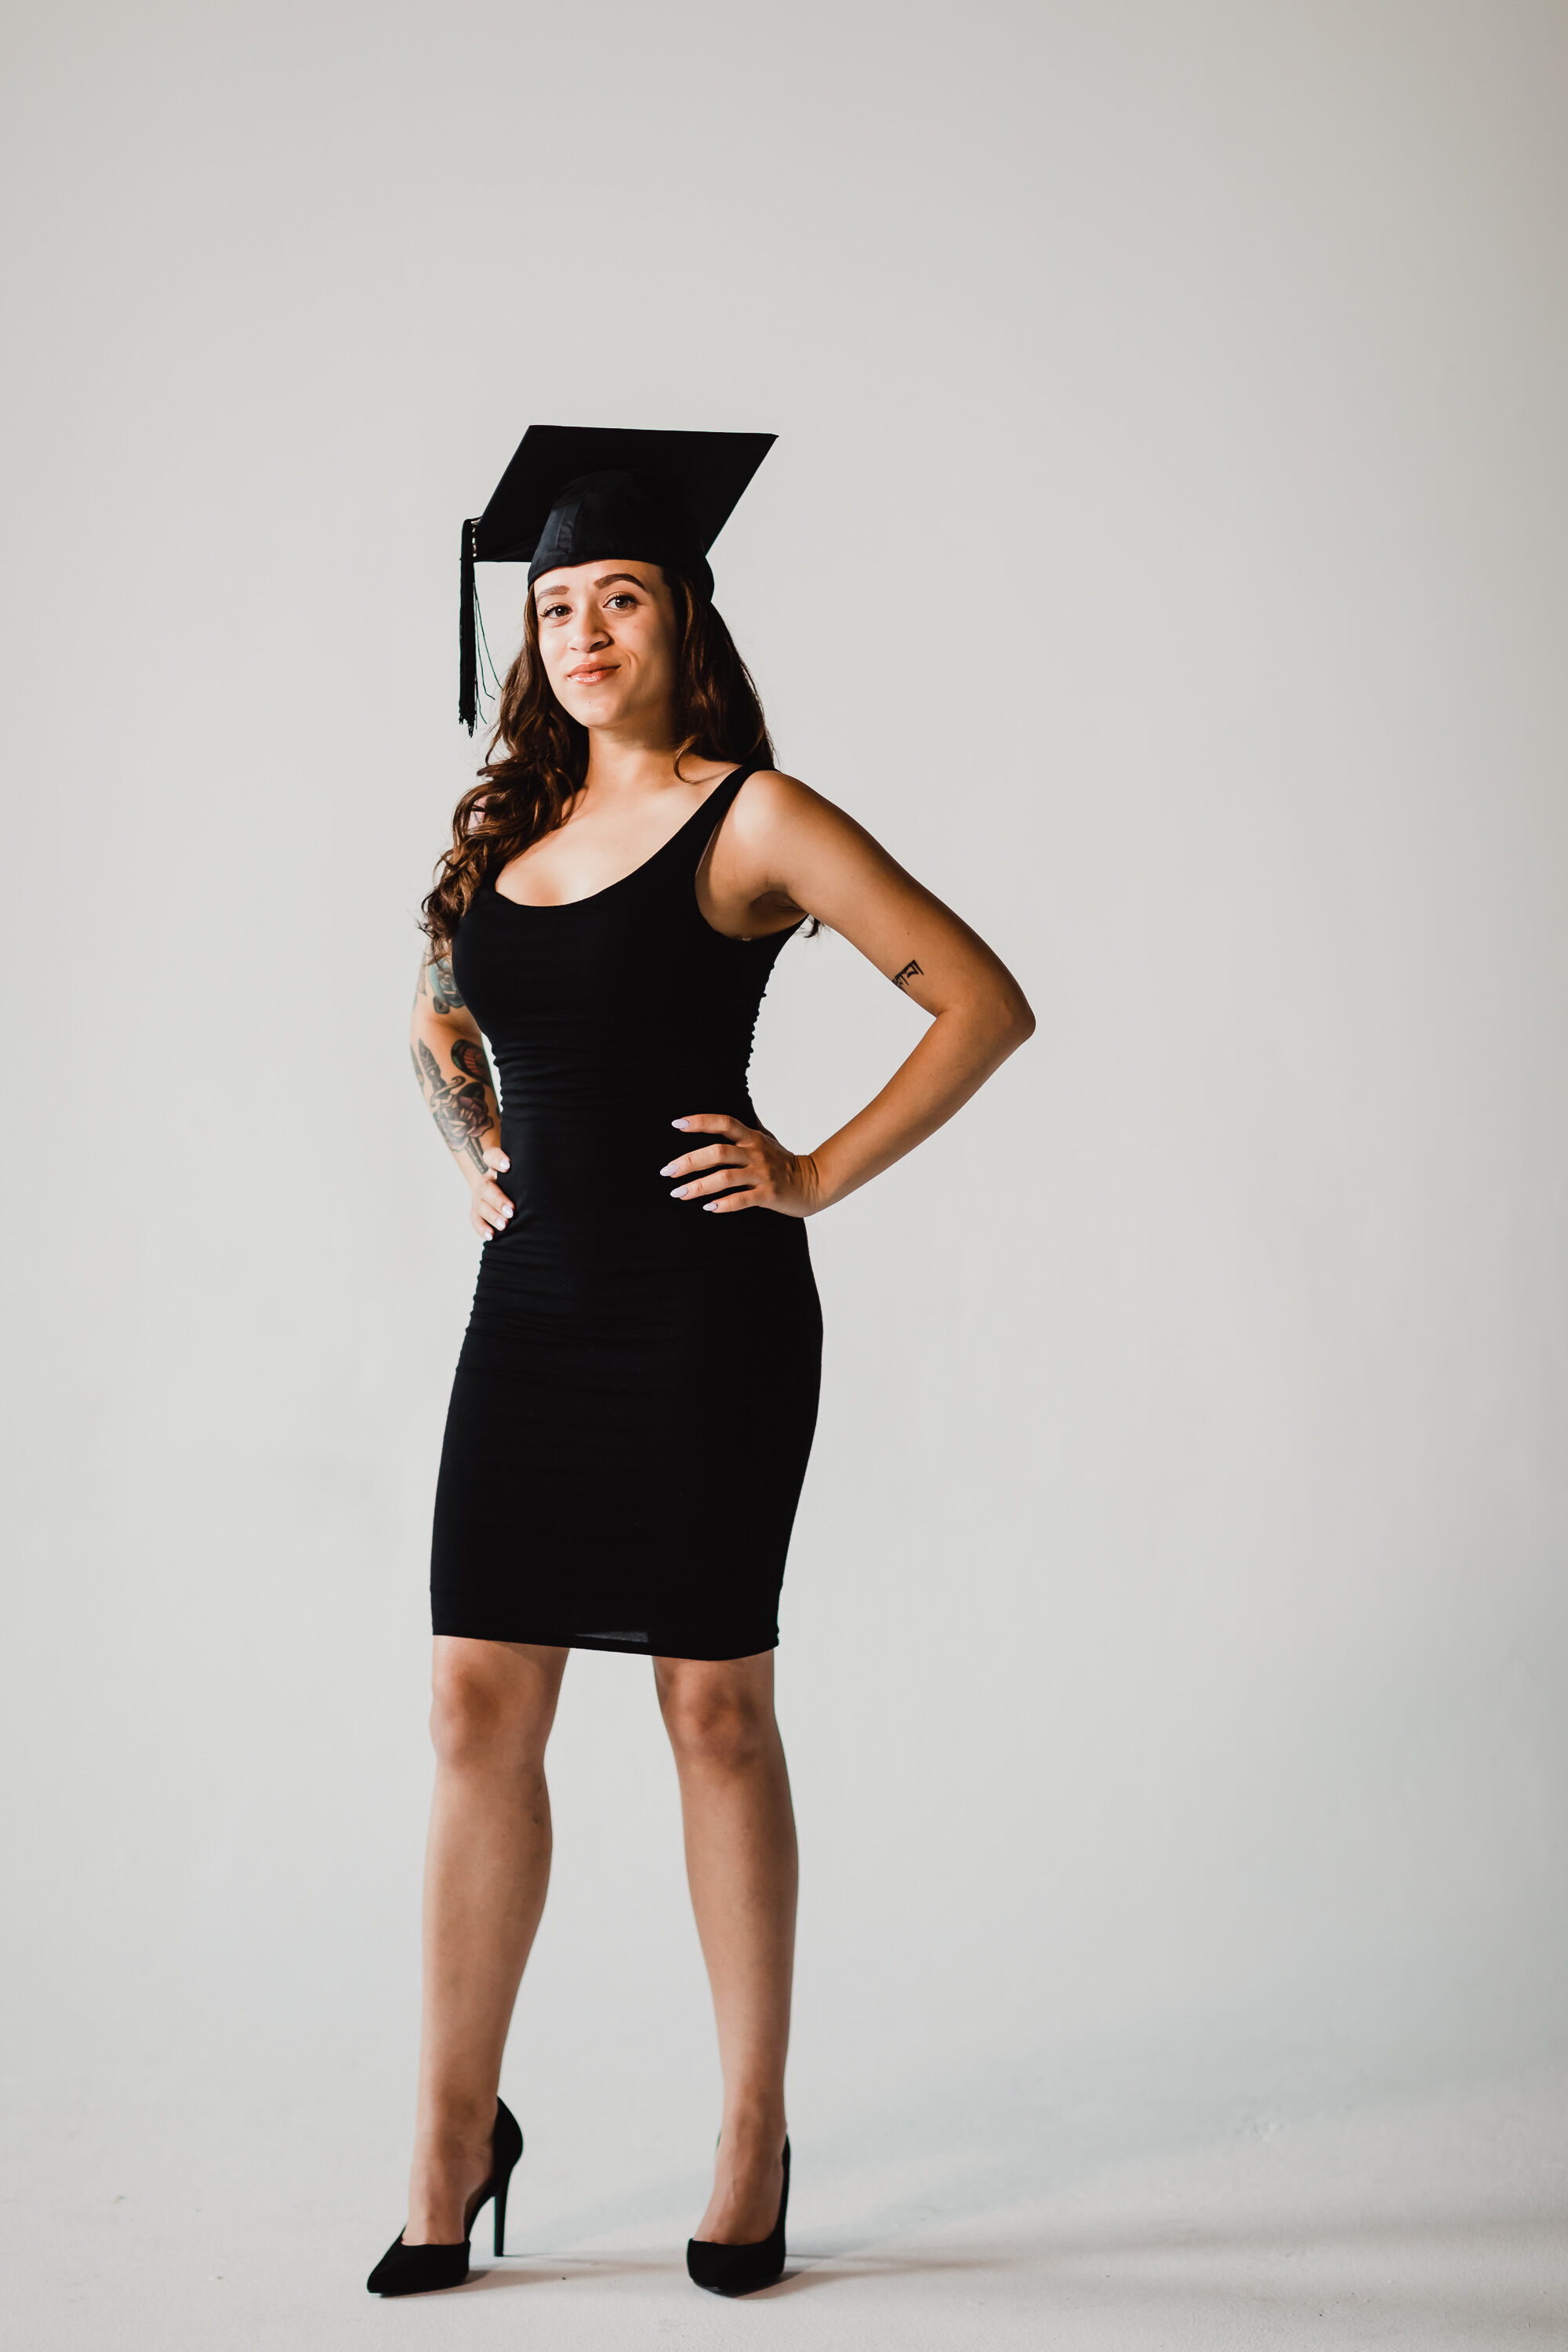 Gianna Keiko Atlanta Lifestyle Photographer_graduation portrait-29.jpg